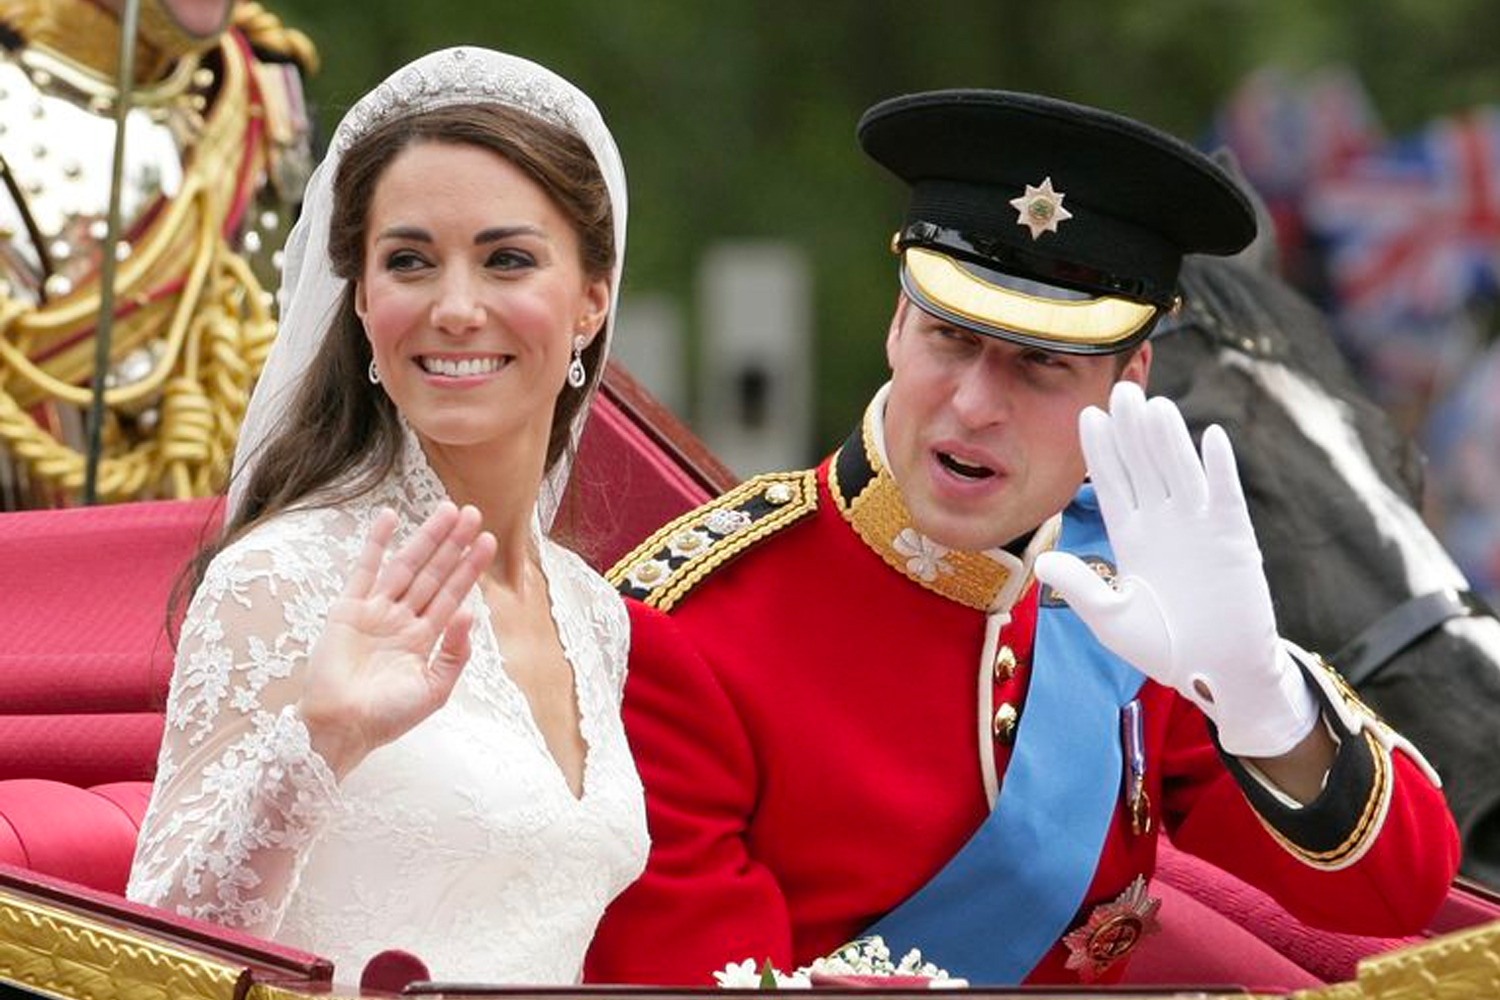 Kate Middleton Wedding Gown